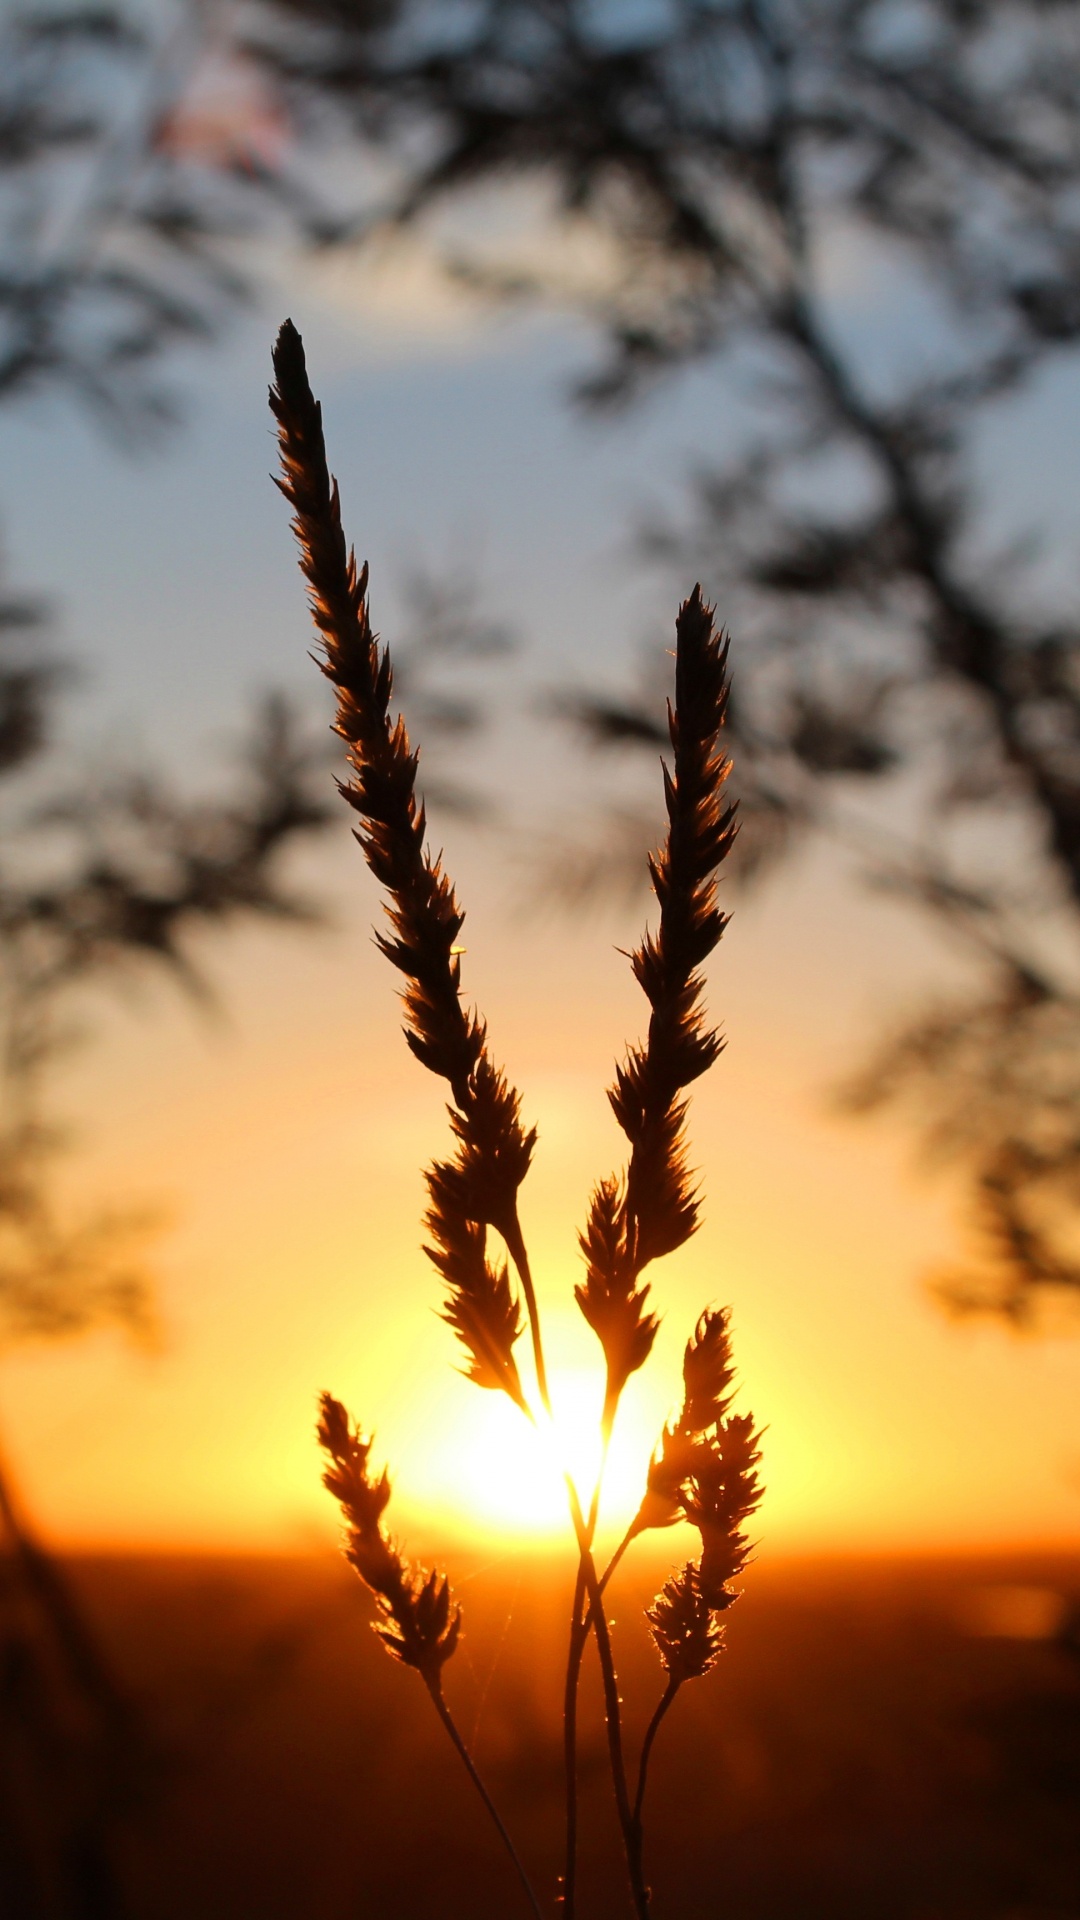 Sunset, Sunlight, Sunrise, Grasses, Dusk. Wallpaper in 1080x1920 Resolution